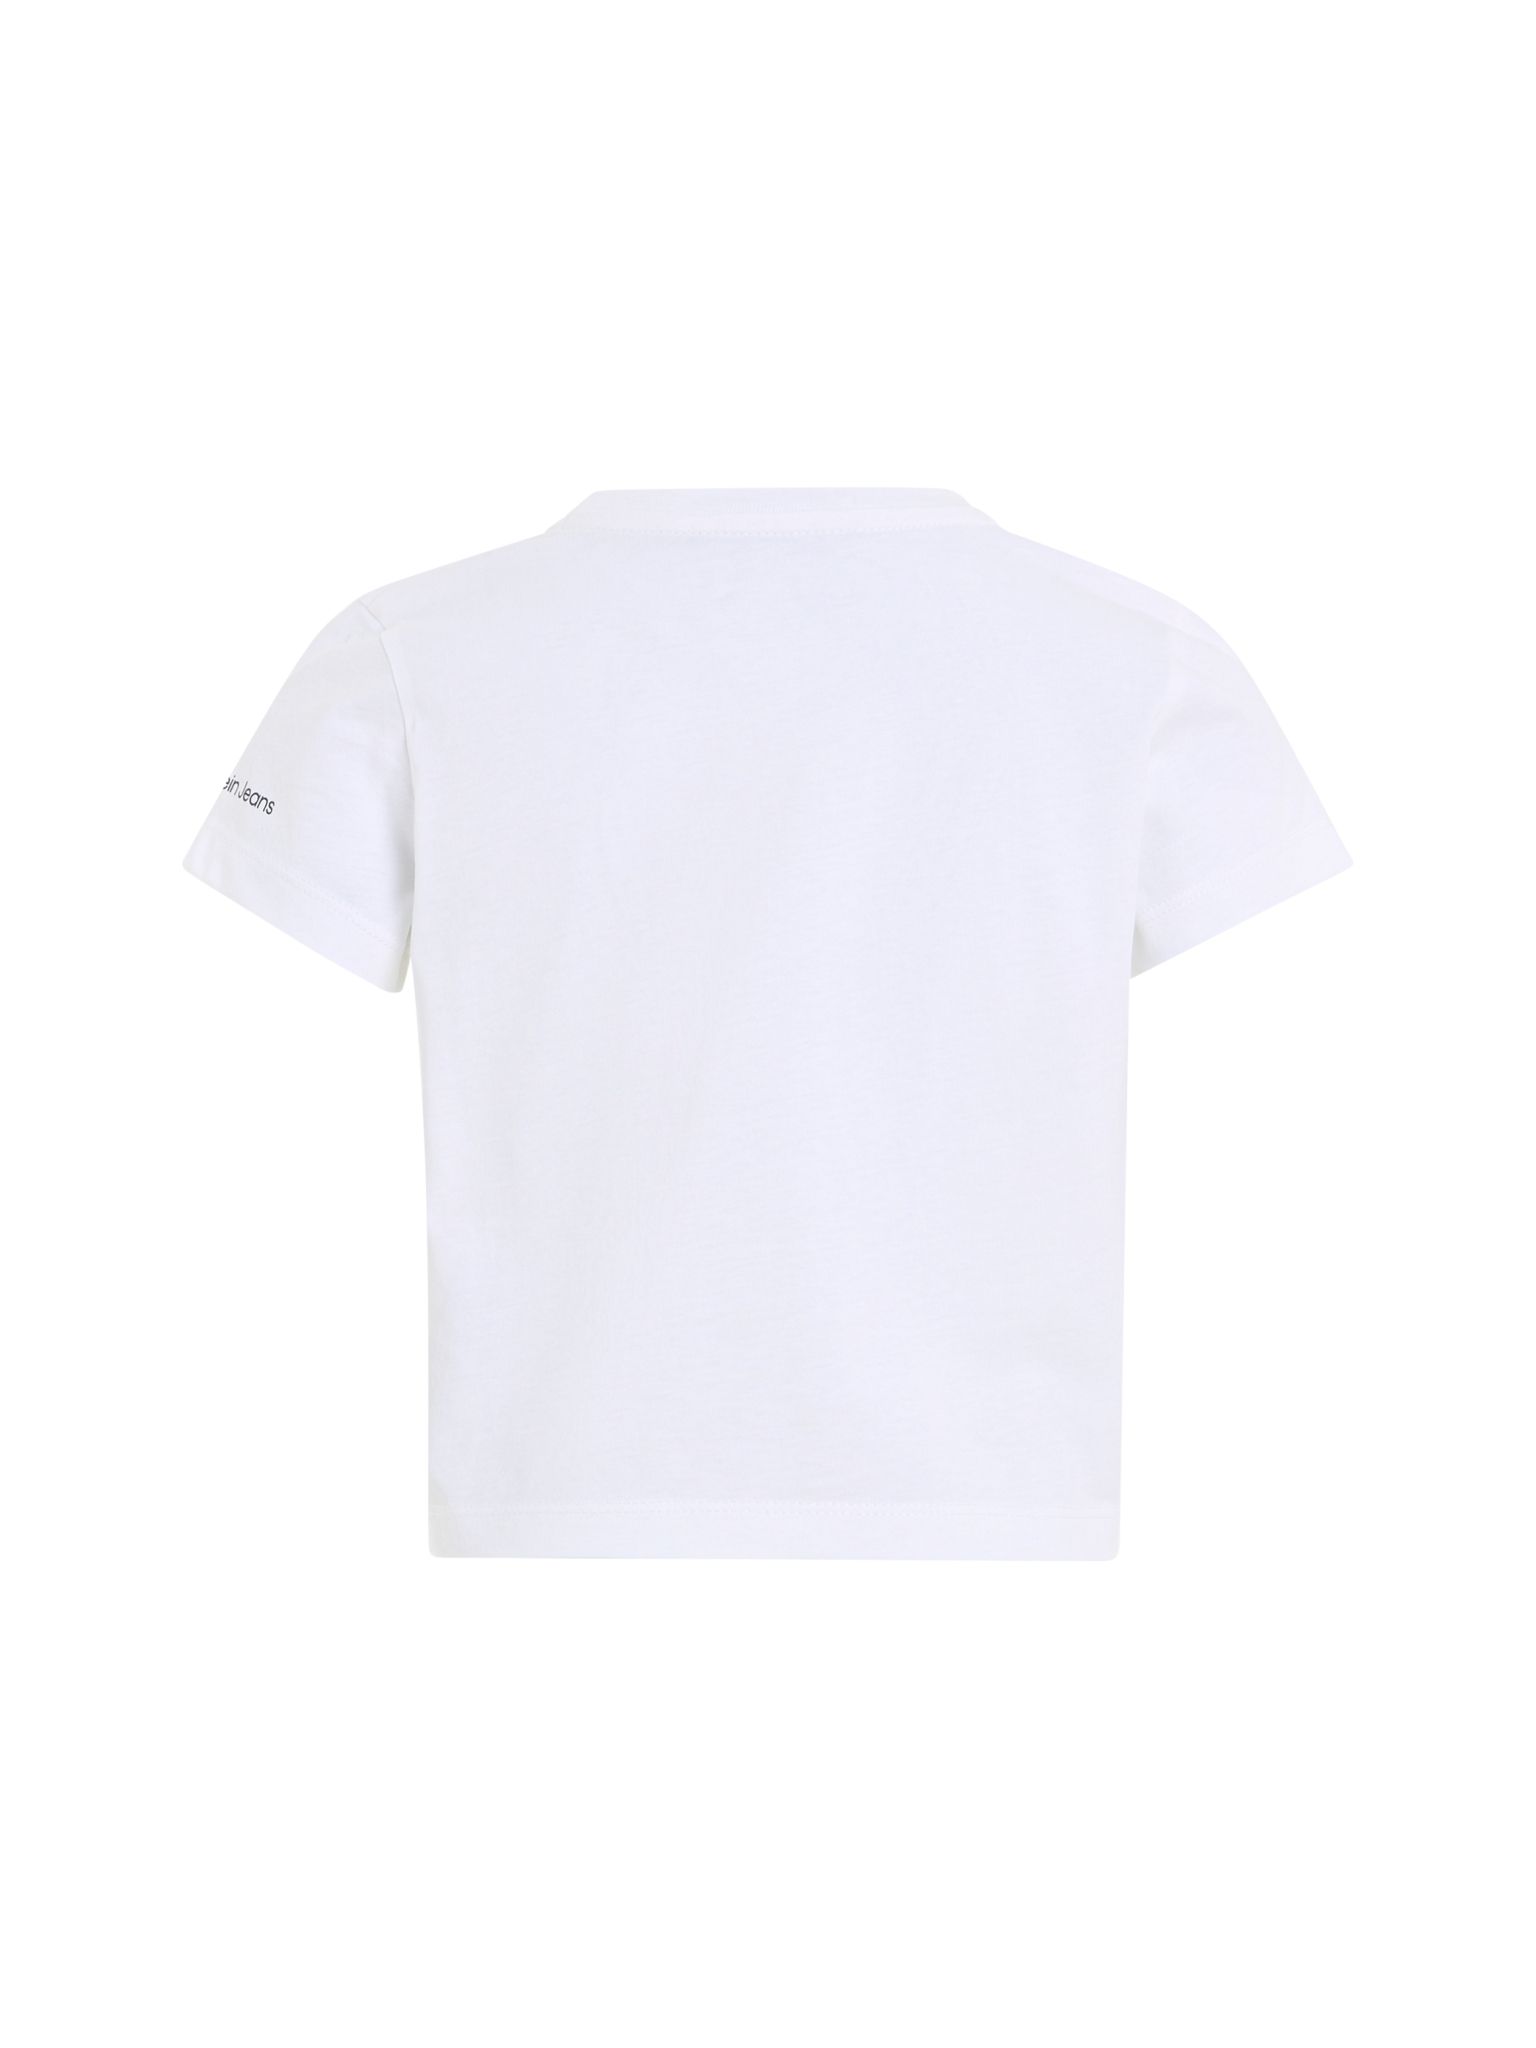 CALVIN KLEIN T-Shirt 10728876 kaufen | WÖHRL